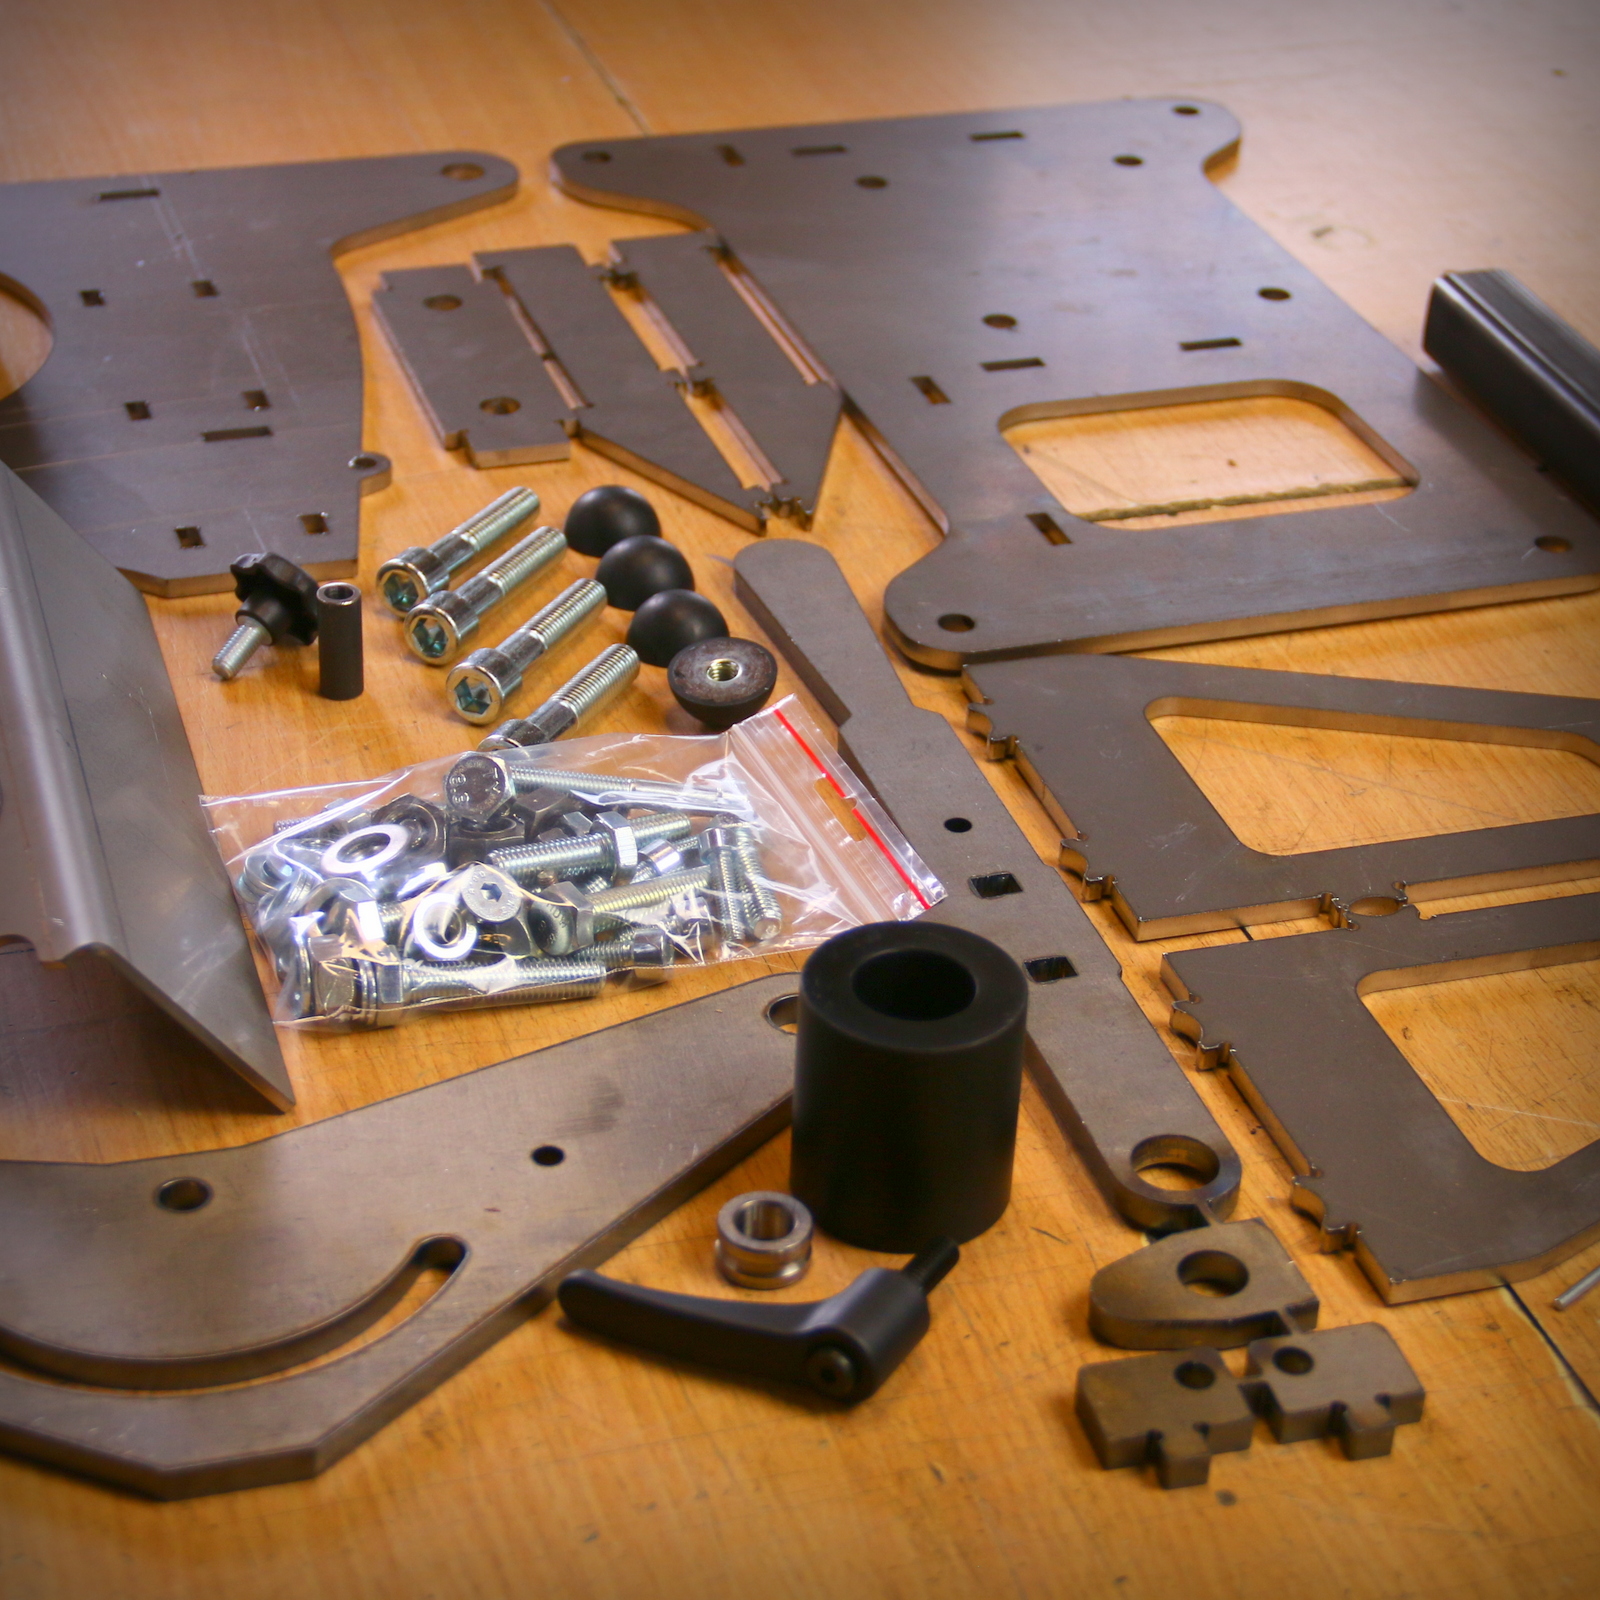 Belt sander BS1500 welding kit